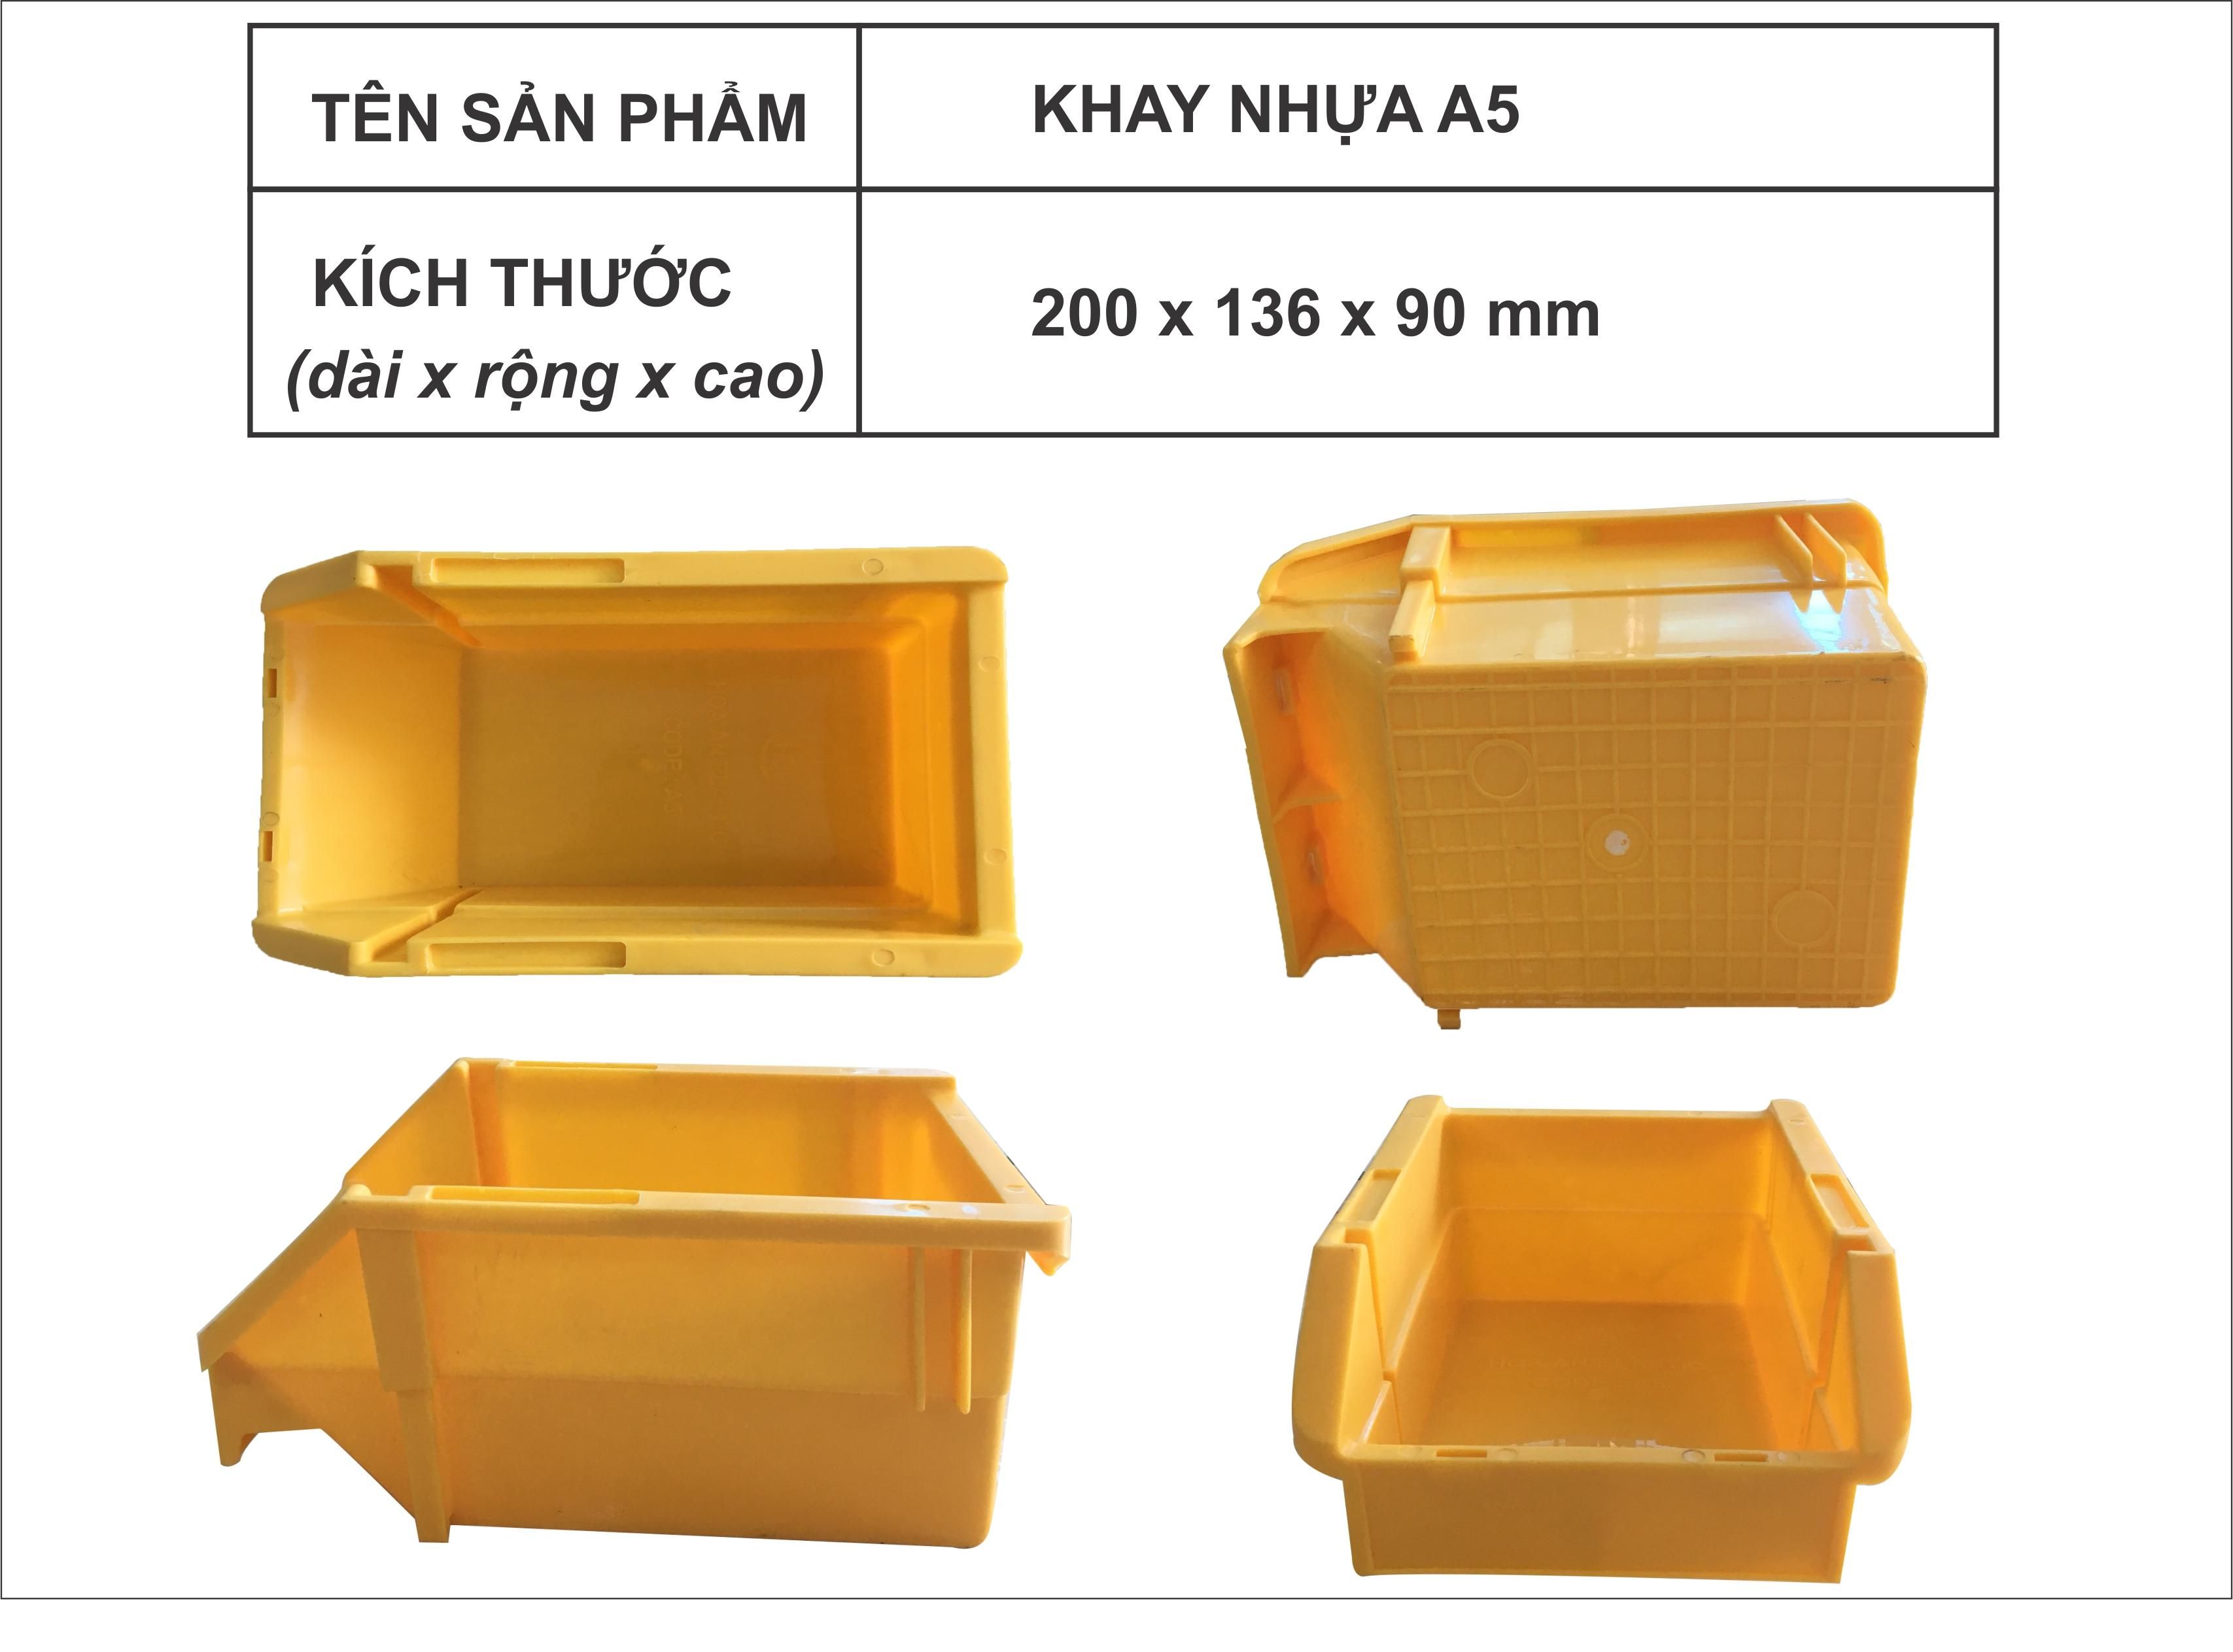 Khay nhựa A5(Khay linh kiện A5) kích thước 200x136x90mm